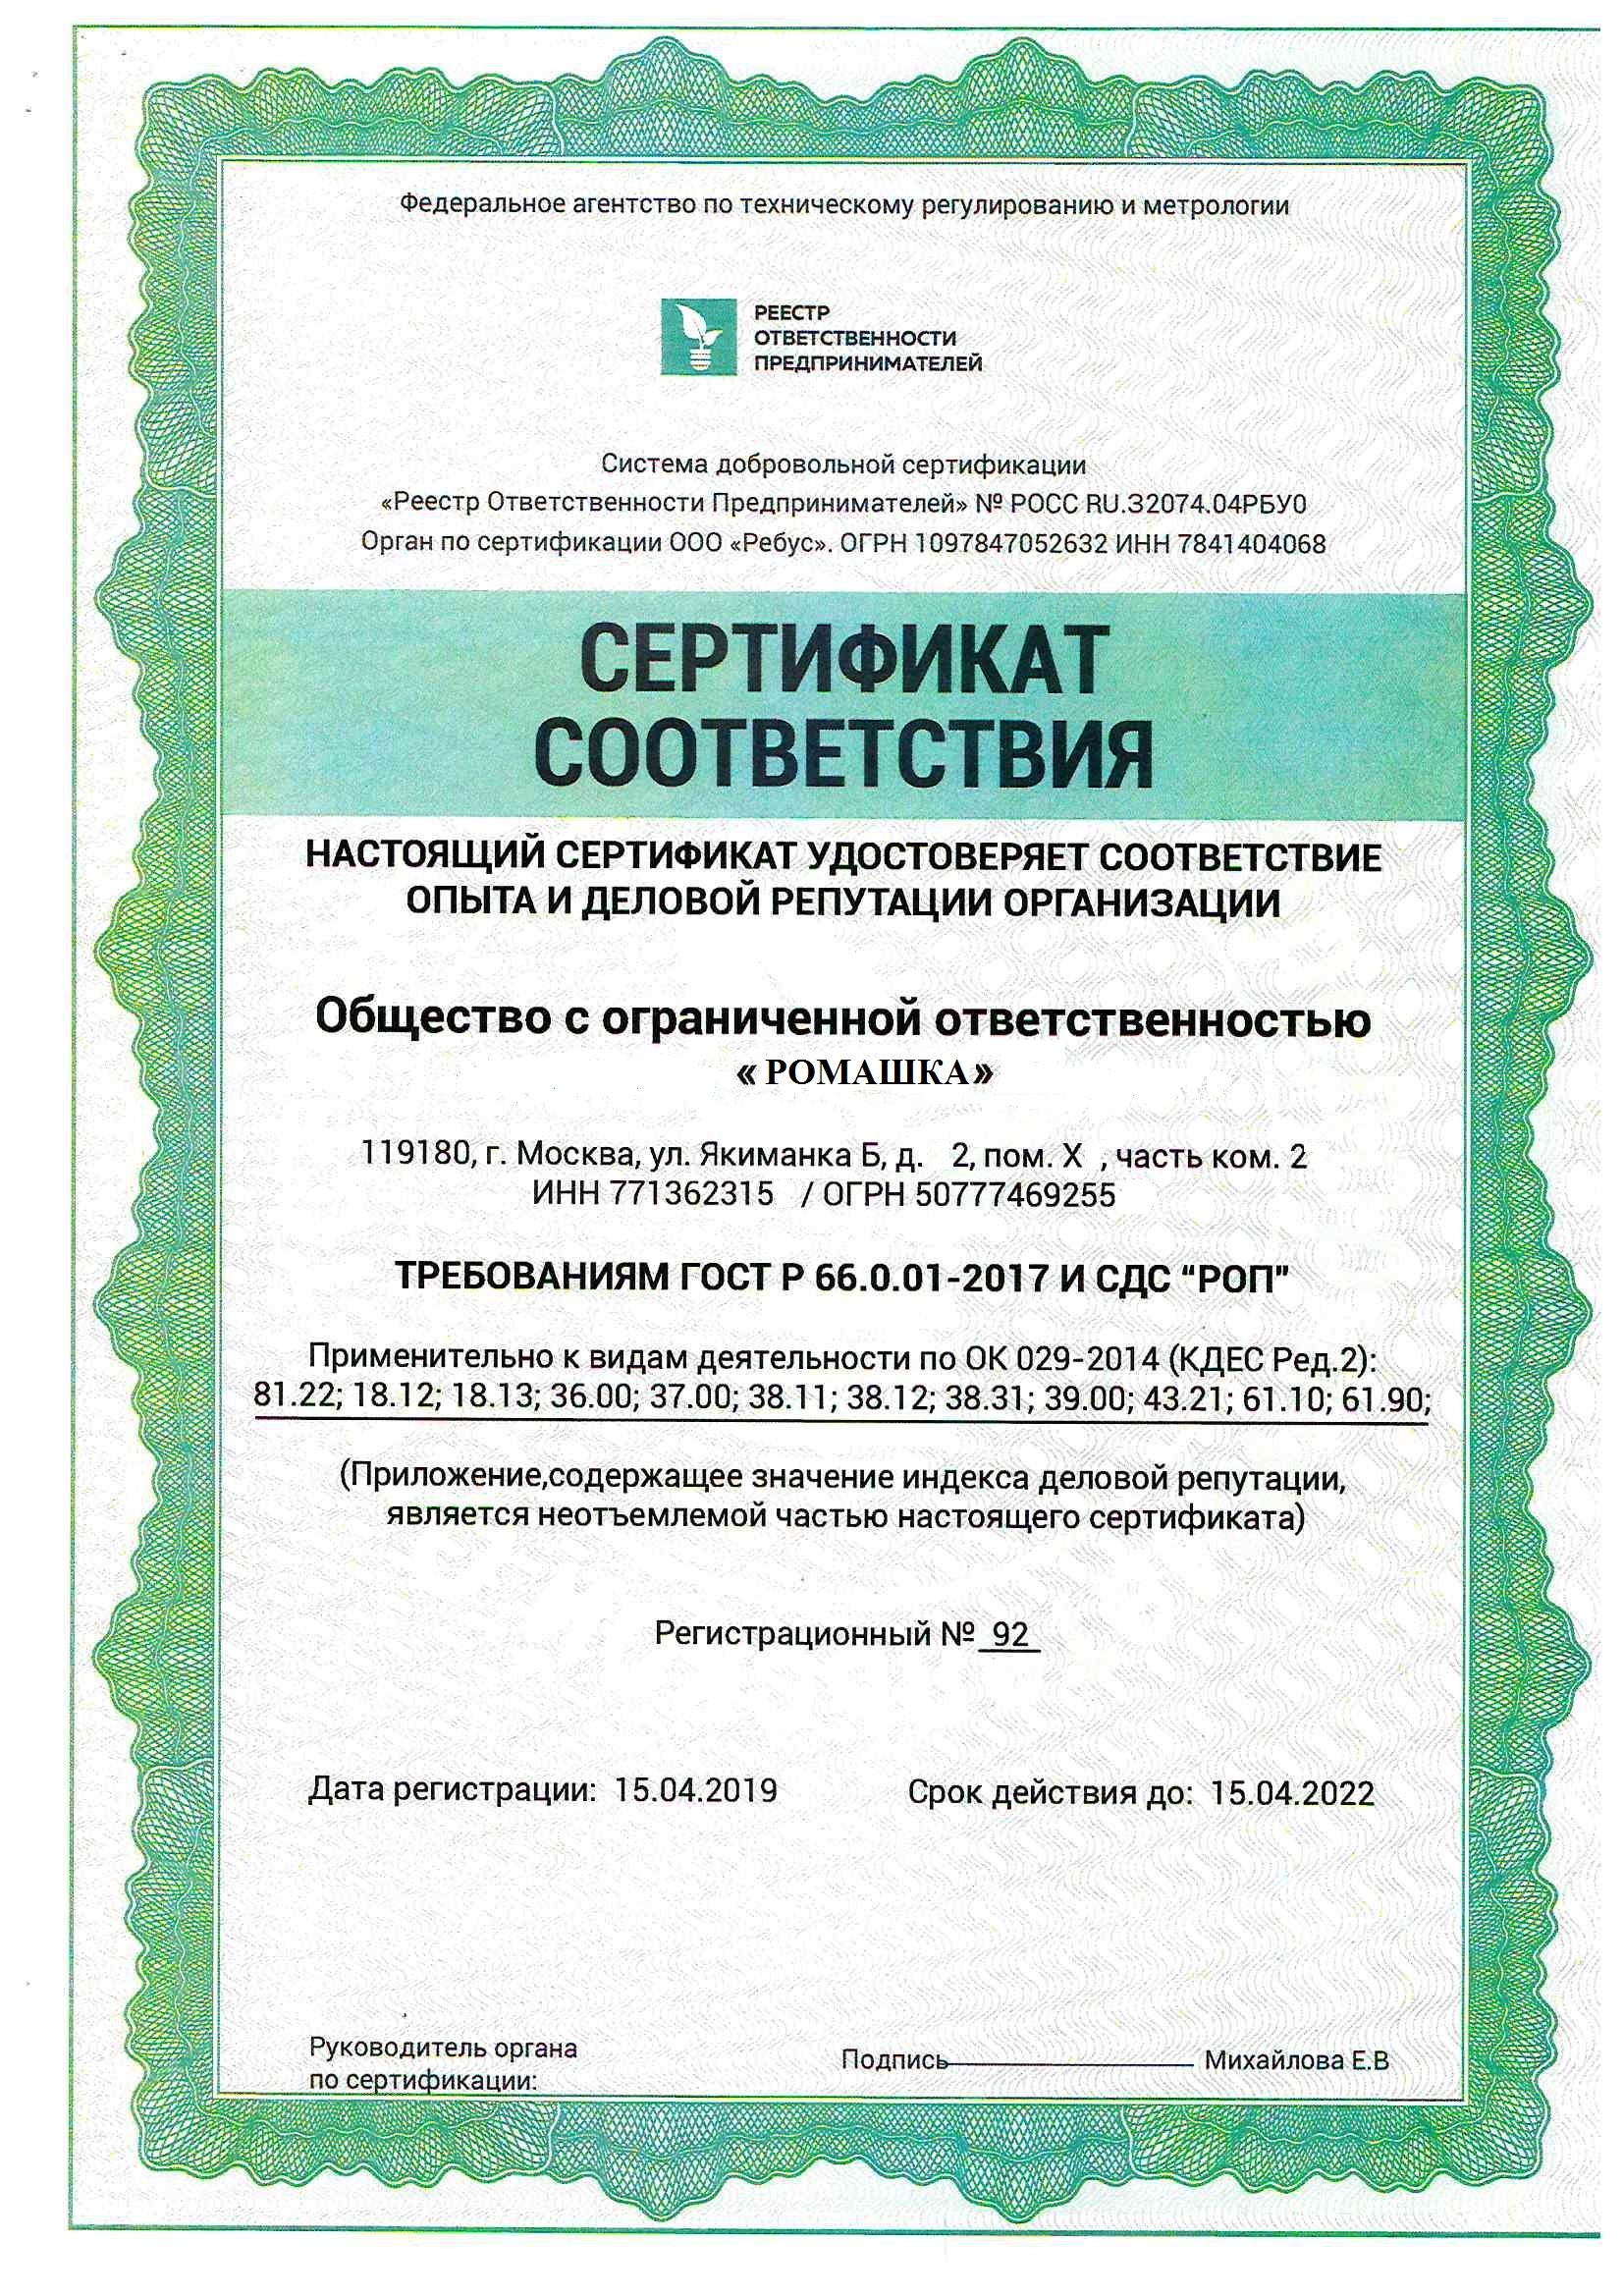 Приложение к Сертификату системы добровольной сертификации СДС «РОП»